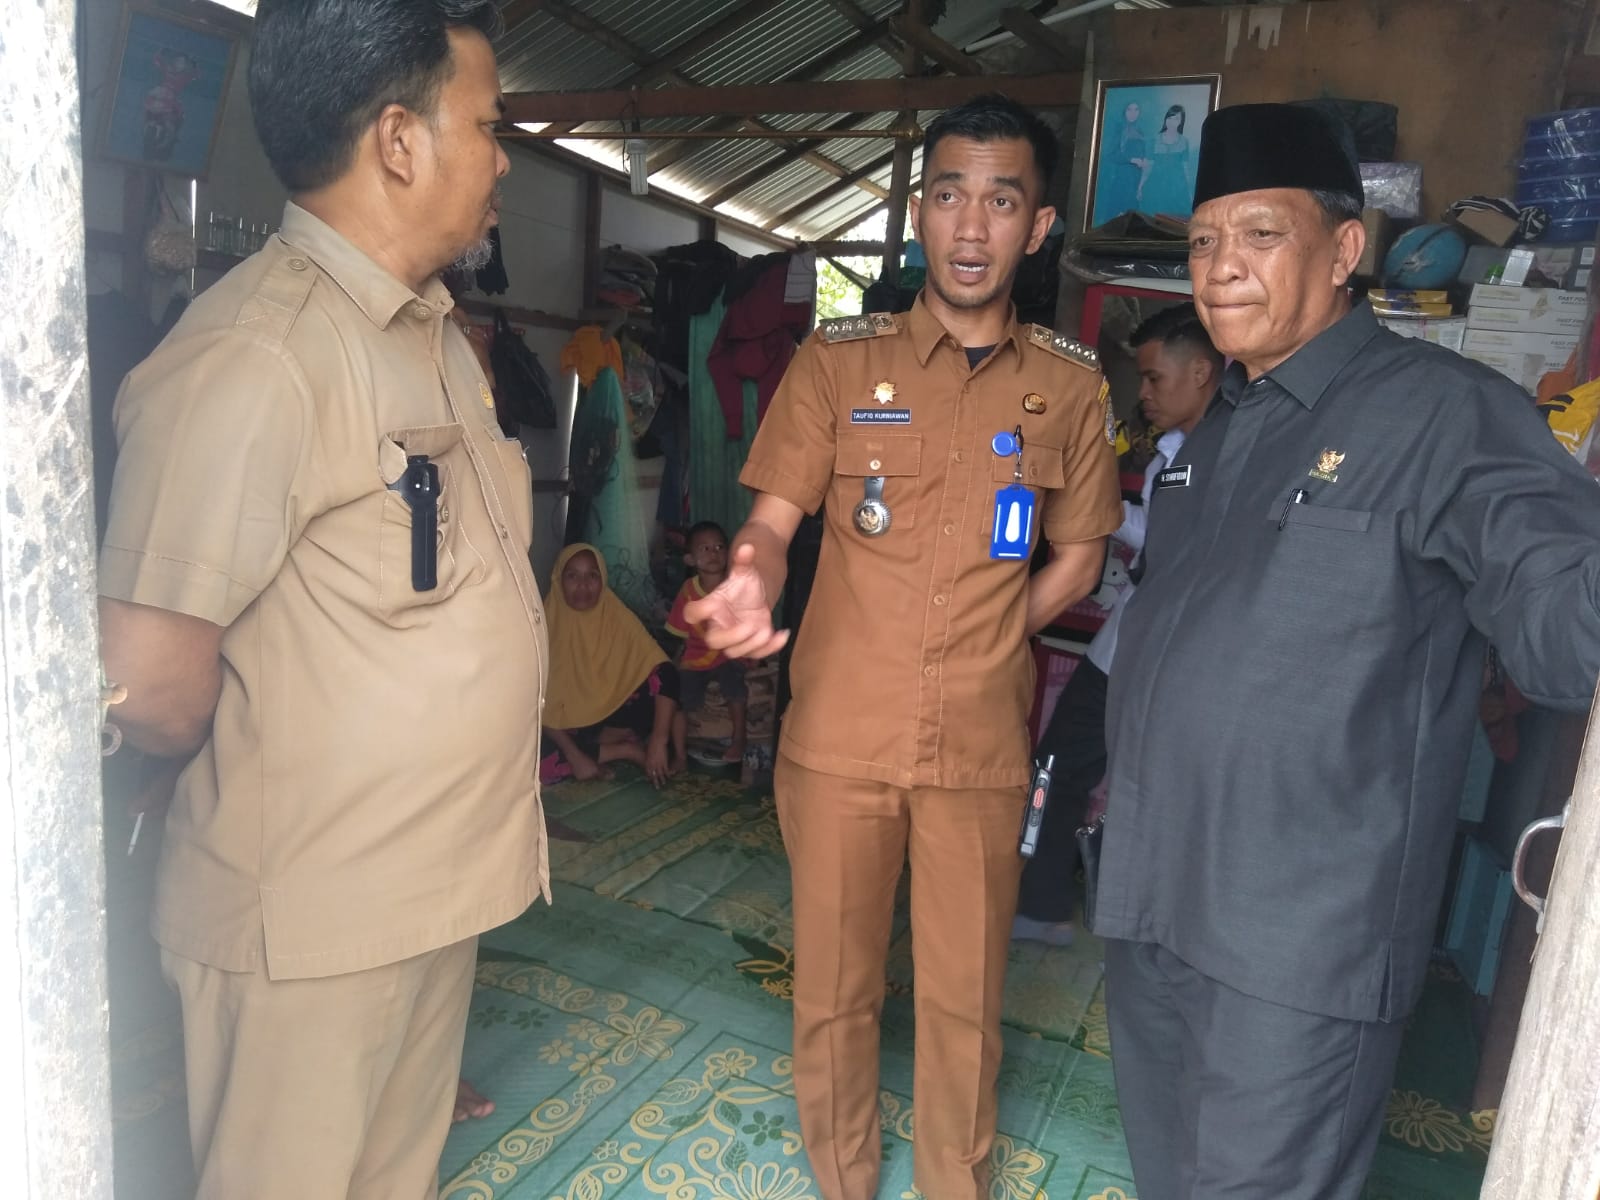 Camat Kuala Jambi Taufiq Kurniawan (Baju Dinas) bersama Ketua Baznas Syarifuddin mengunjungi Rumah Warga tak layak huni di Tanjung Solok 